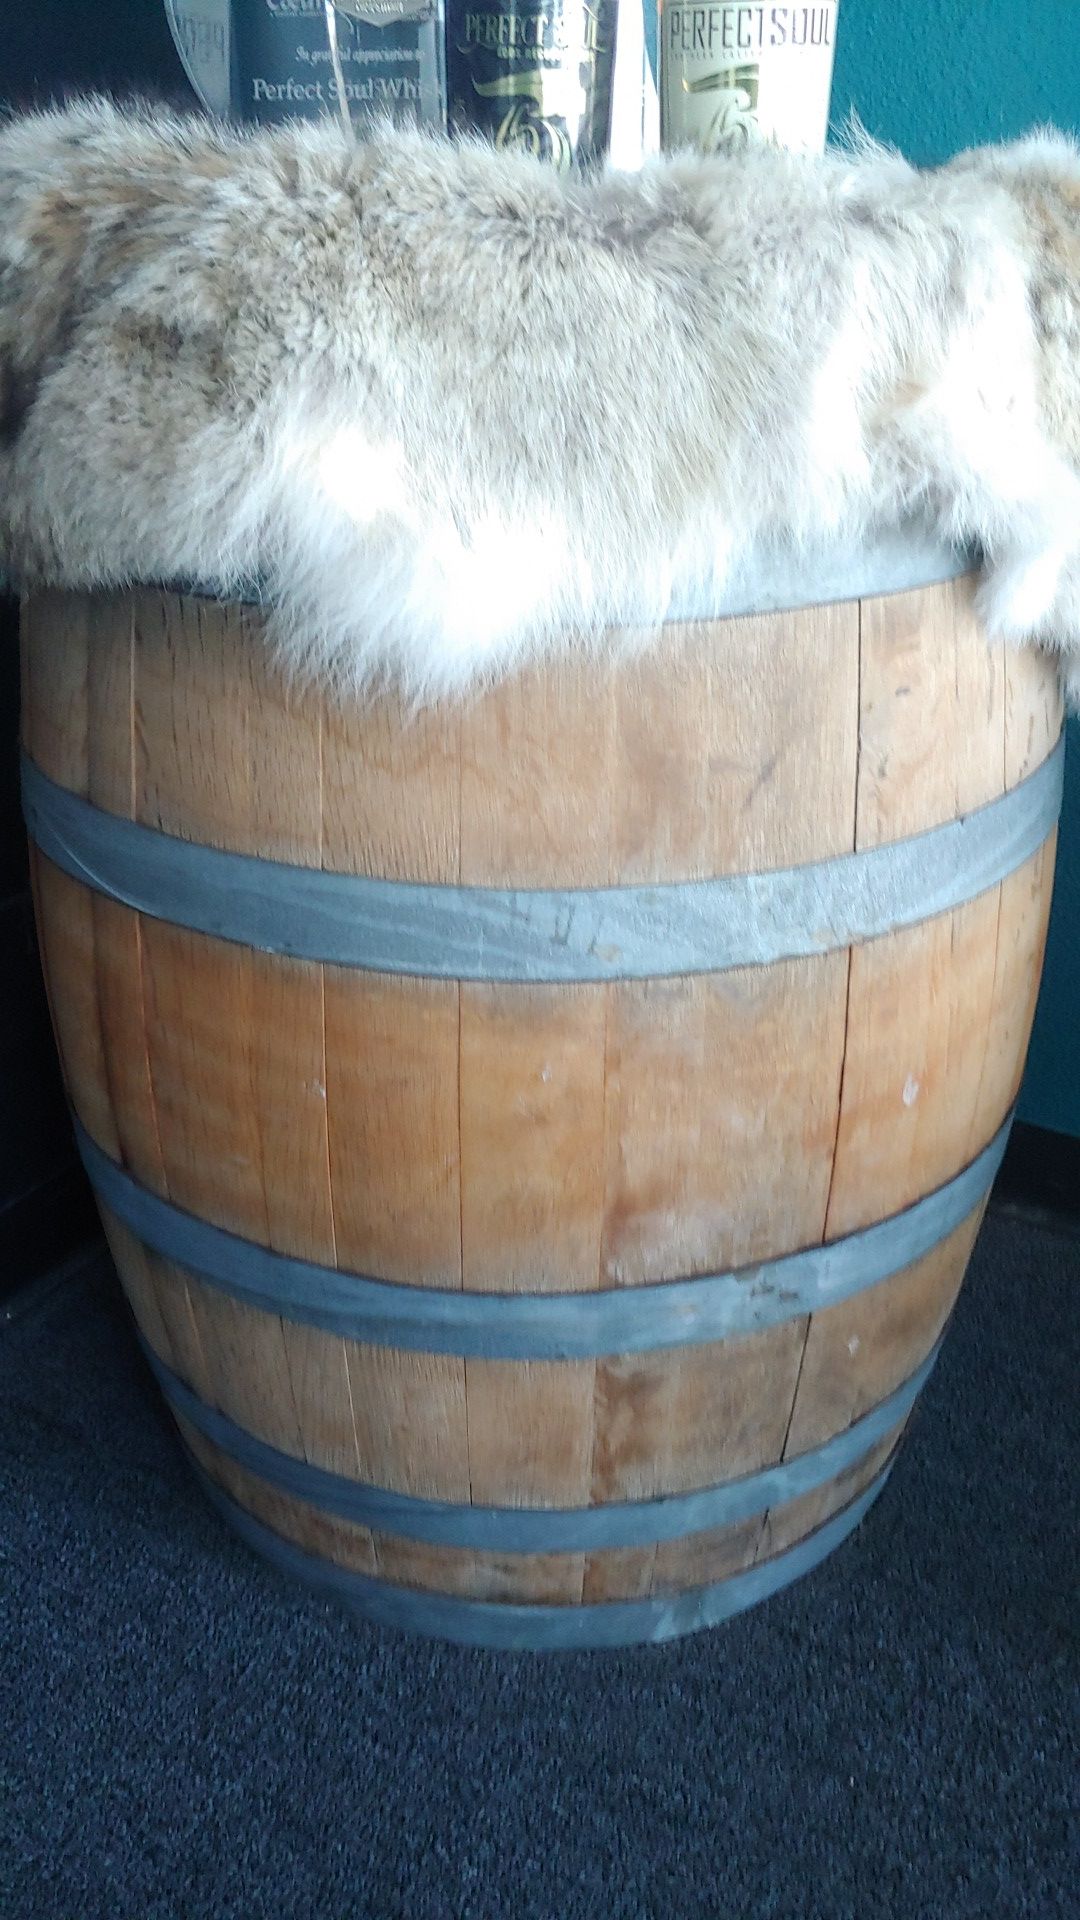 59 Gallon Wine Barrels